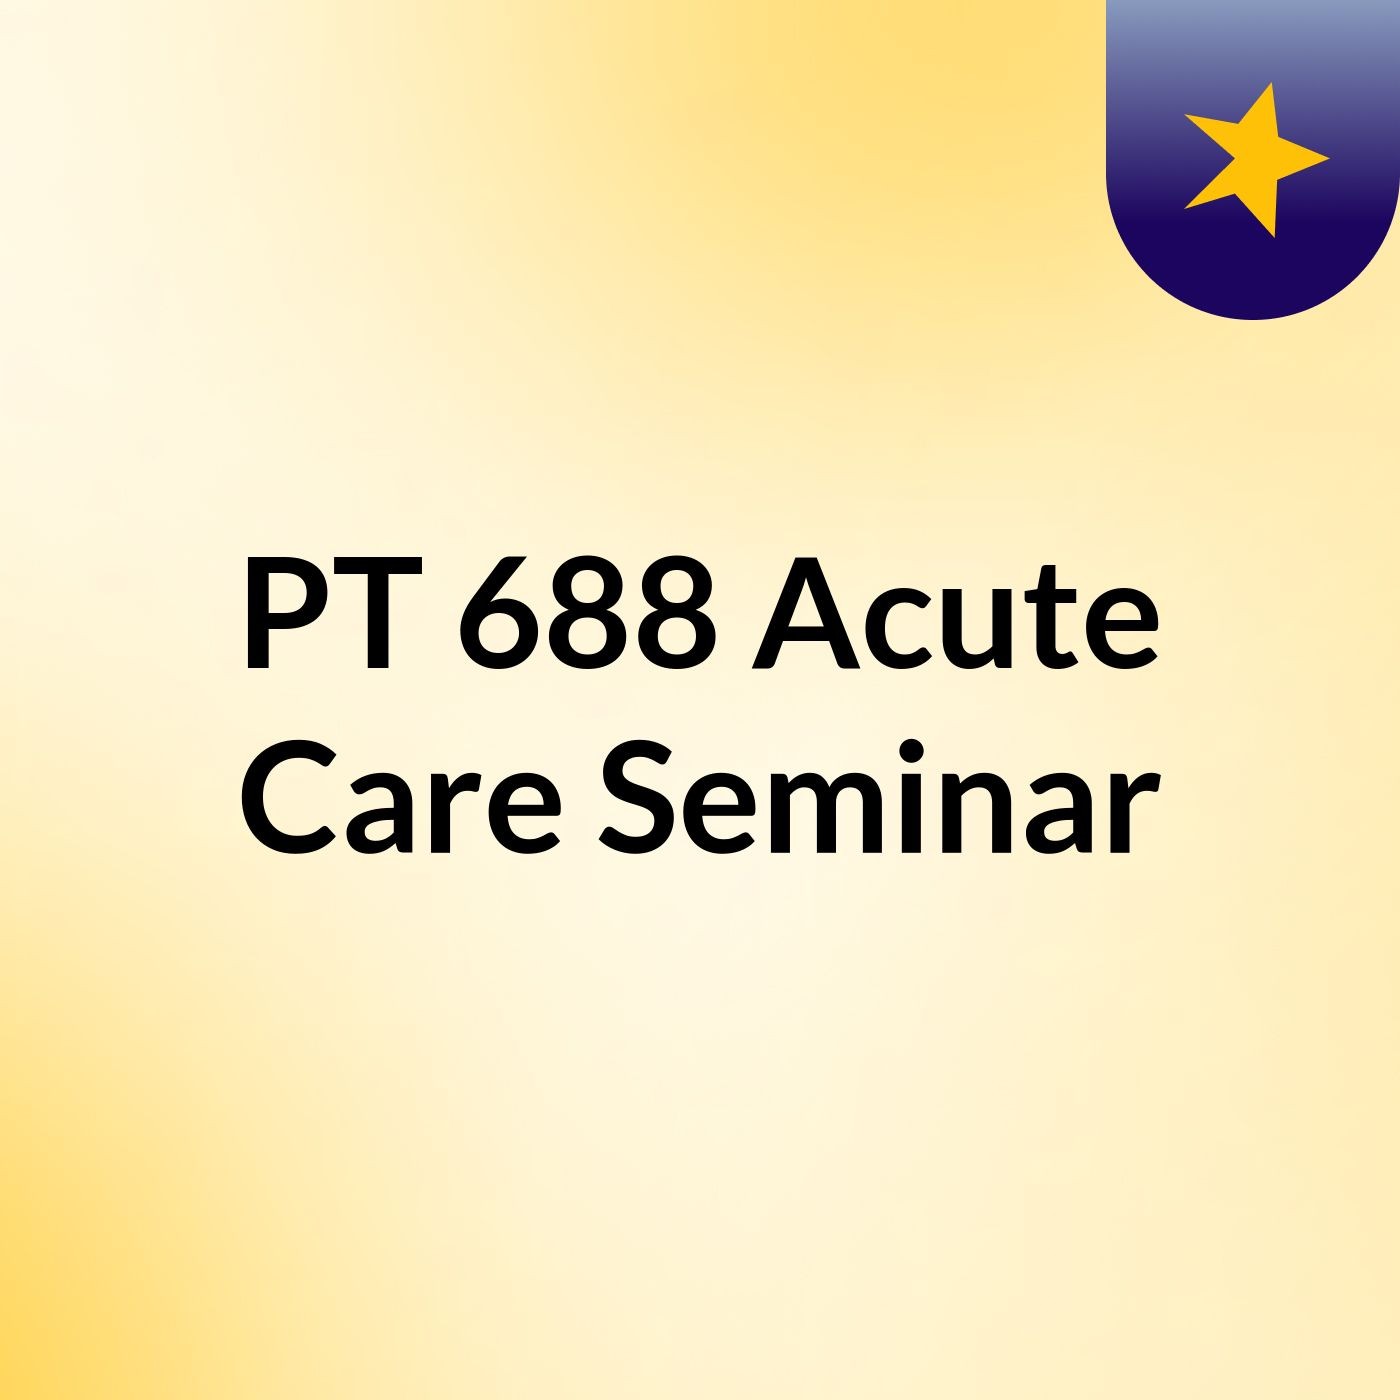 PT 688: Acute Care Seminar